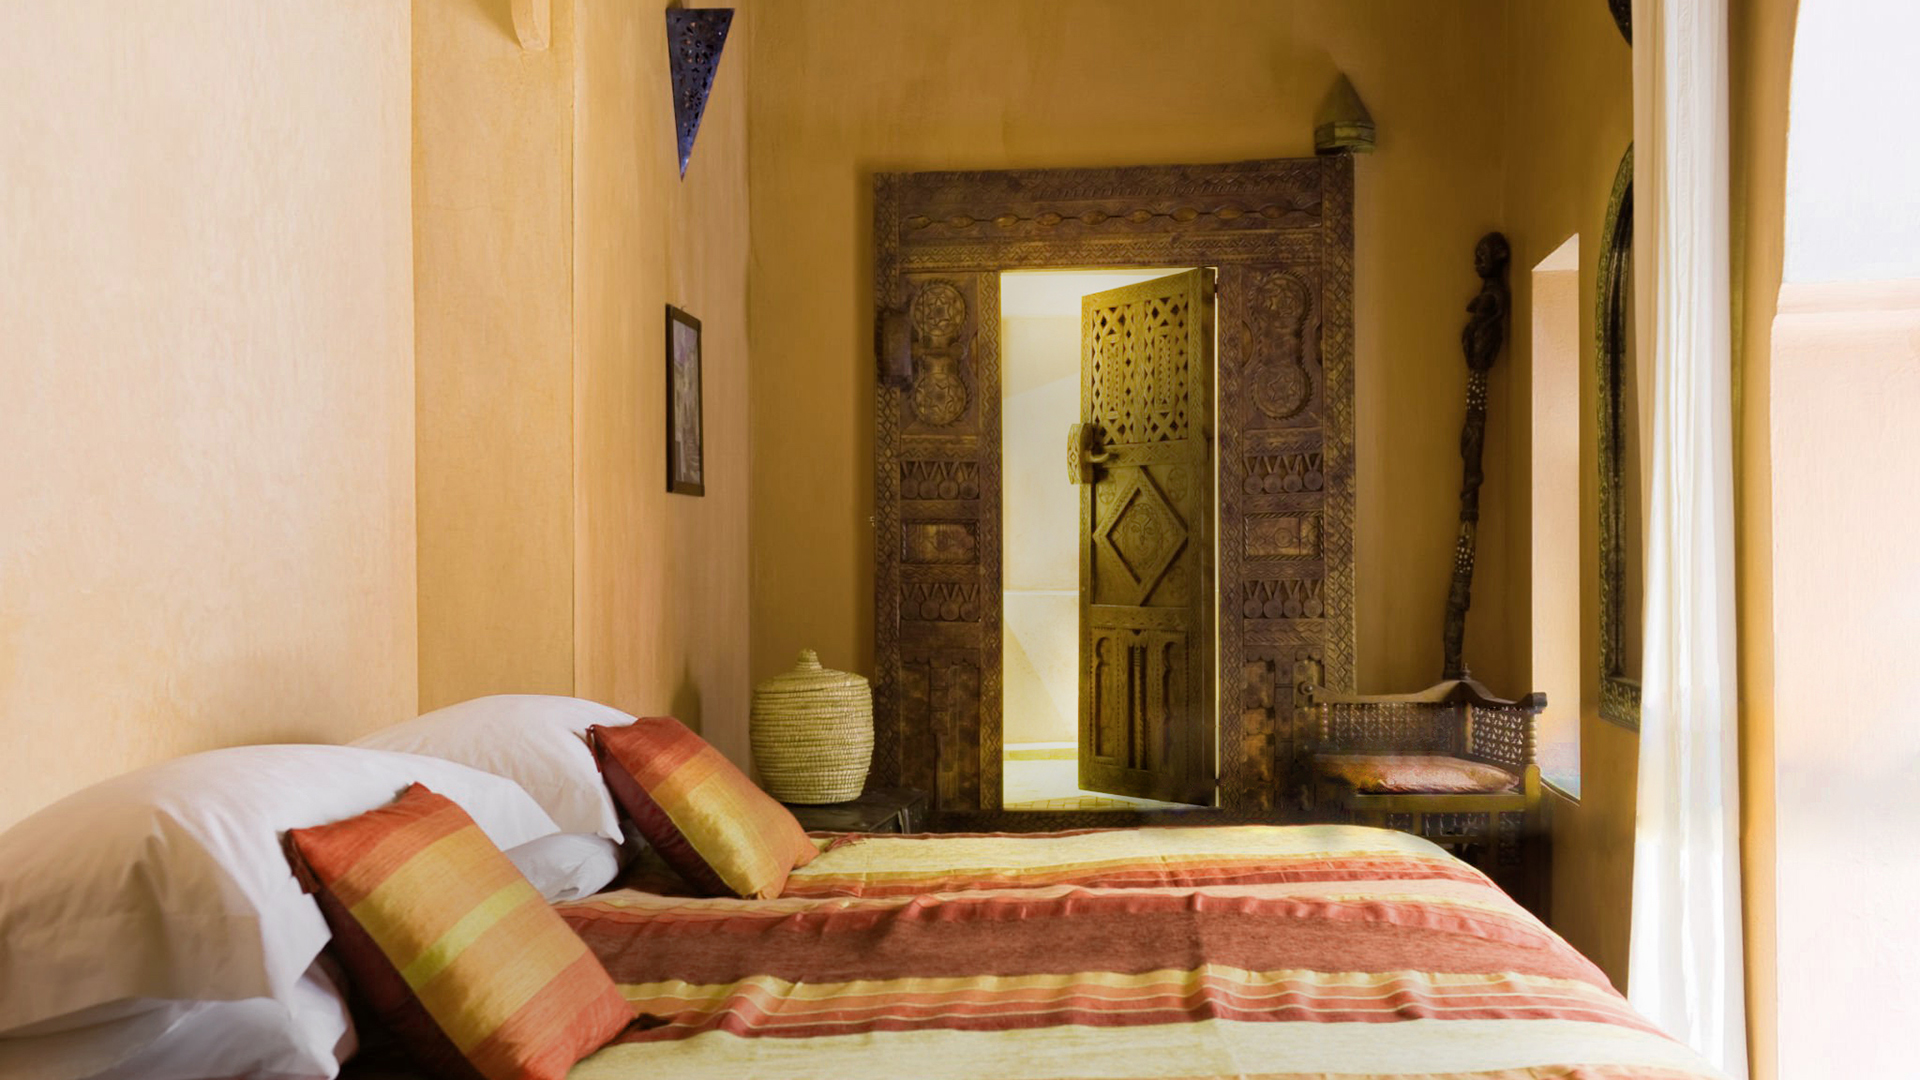 Sypialnia w stylu arabskim z tadelaktem na ścianach